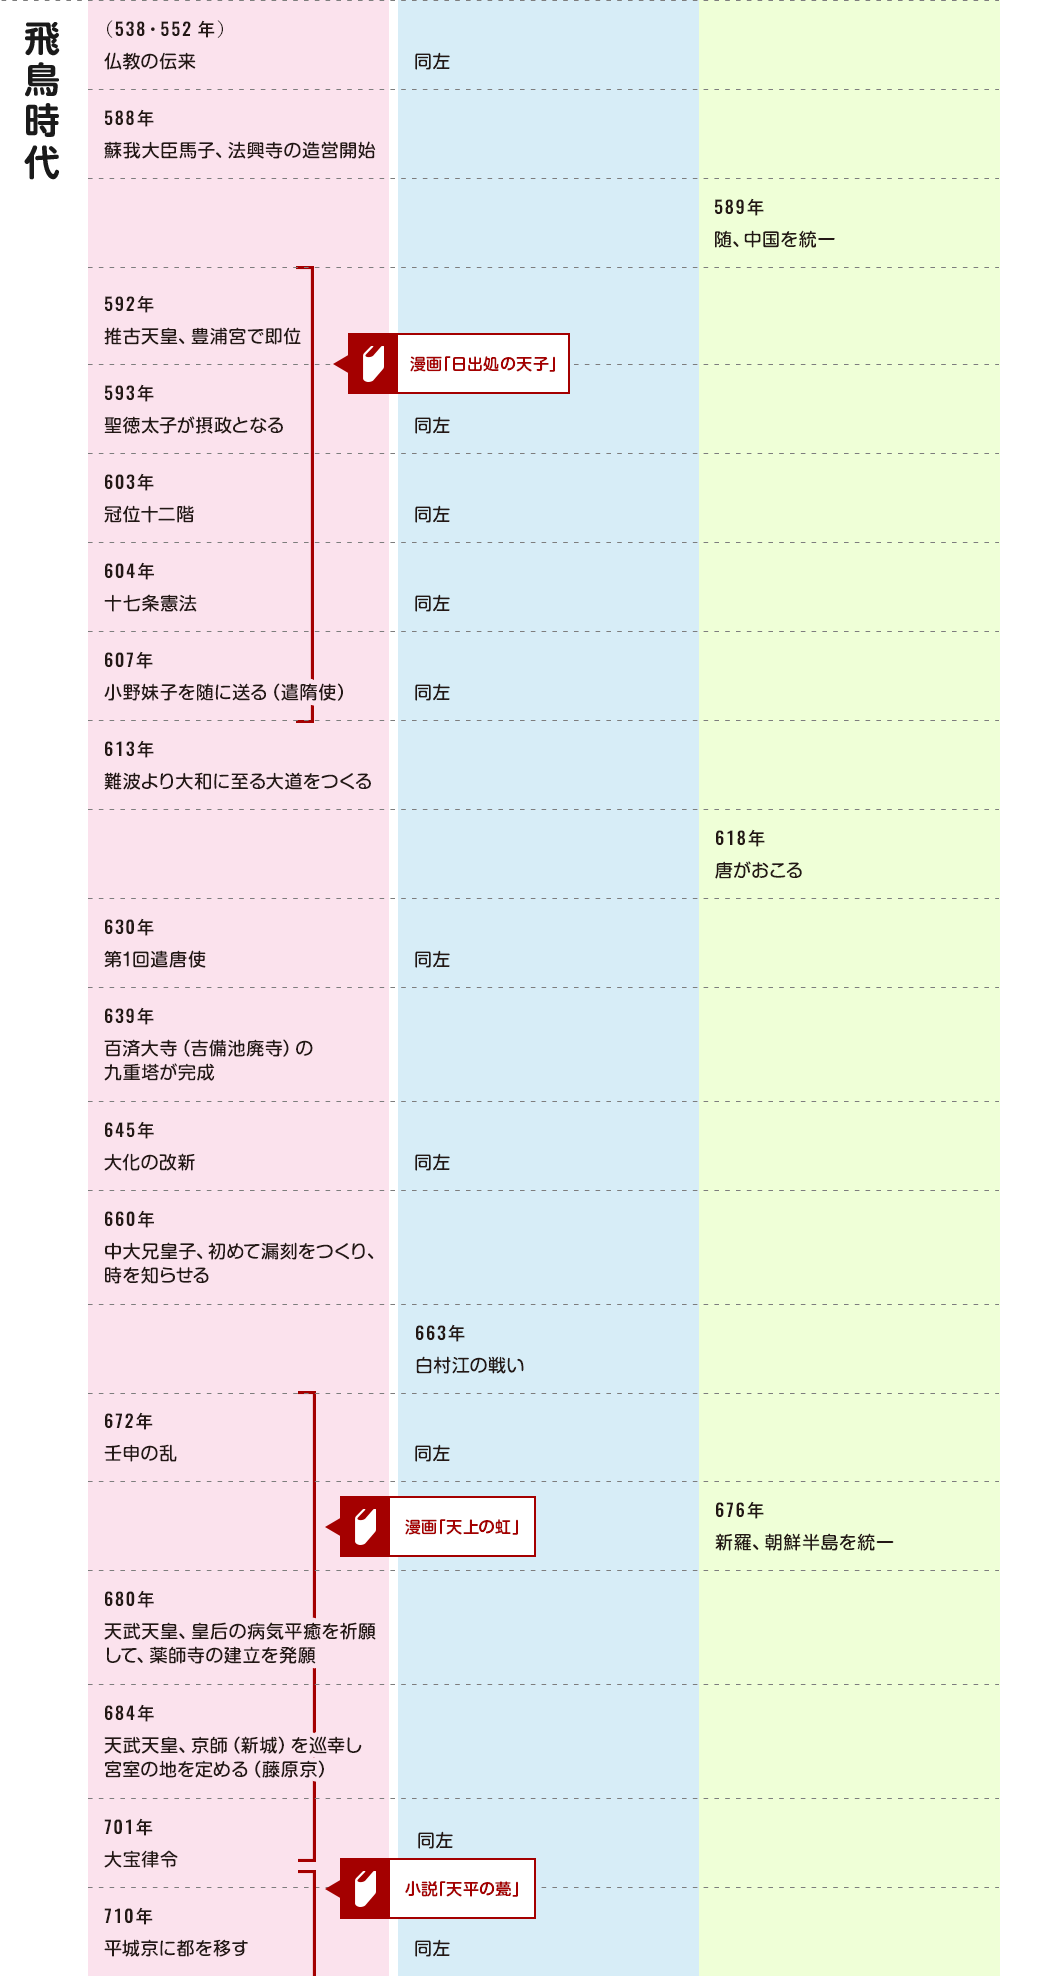 ならデジタル年表 | 奈良県歴史文化資源データベース「いかす・なら」